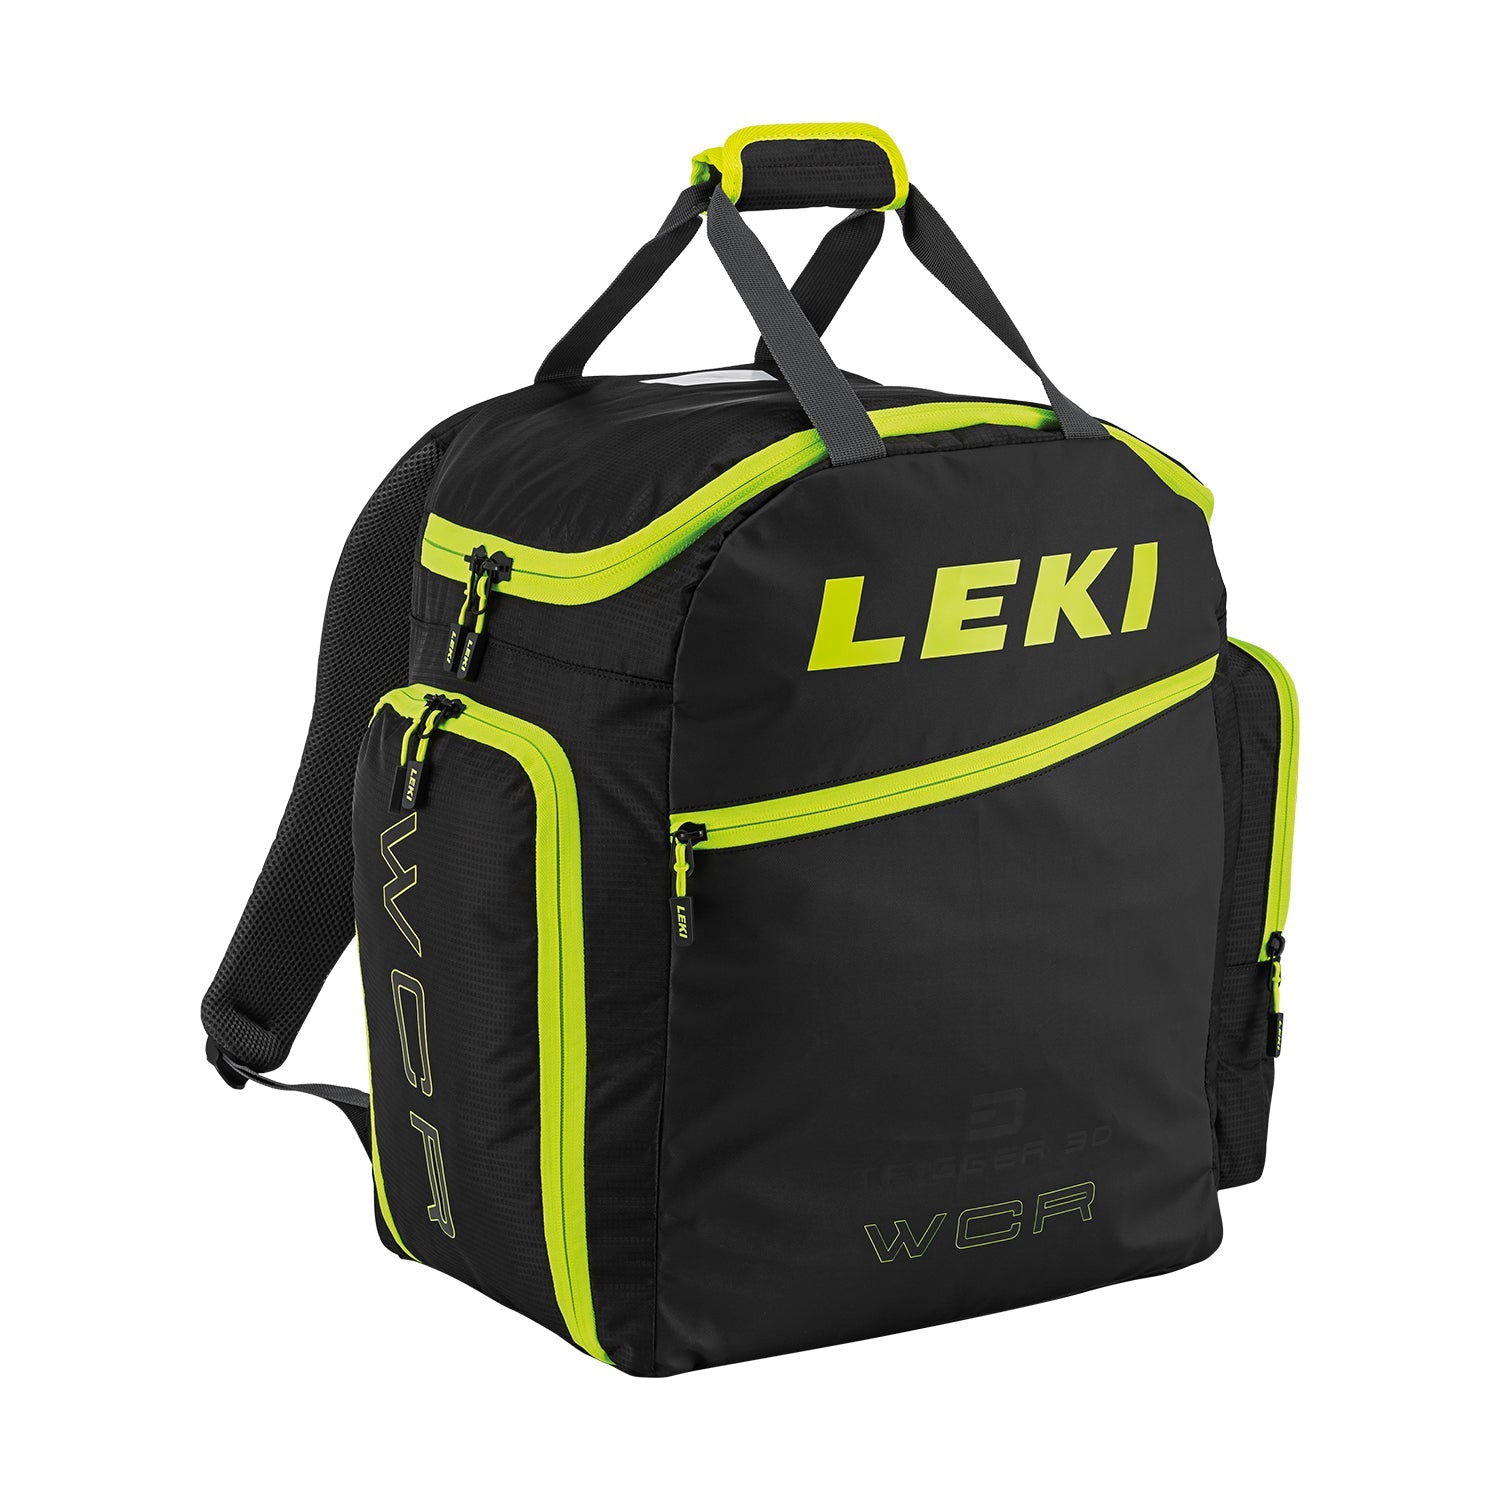 Leki Bootbag Hot 40 (Heatable) - Bolsa para botas de esquí, Comprar online